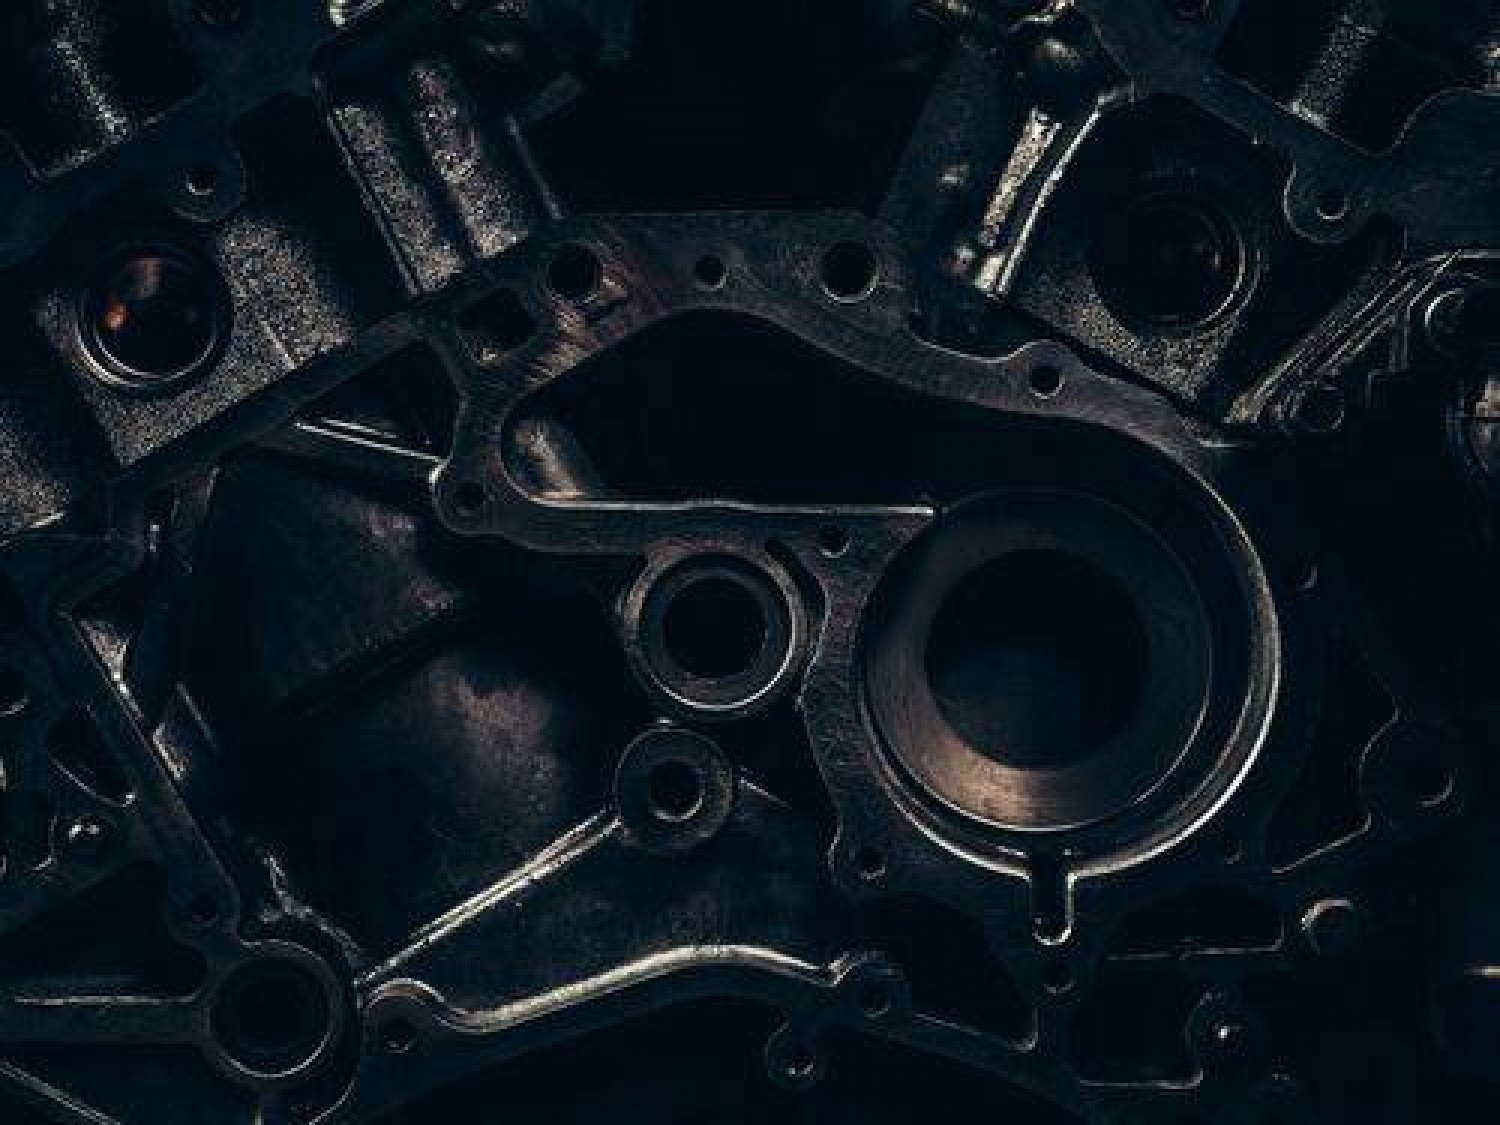 Czym różni się silnik V8 od innych konfiguracji silnika?